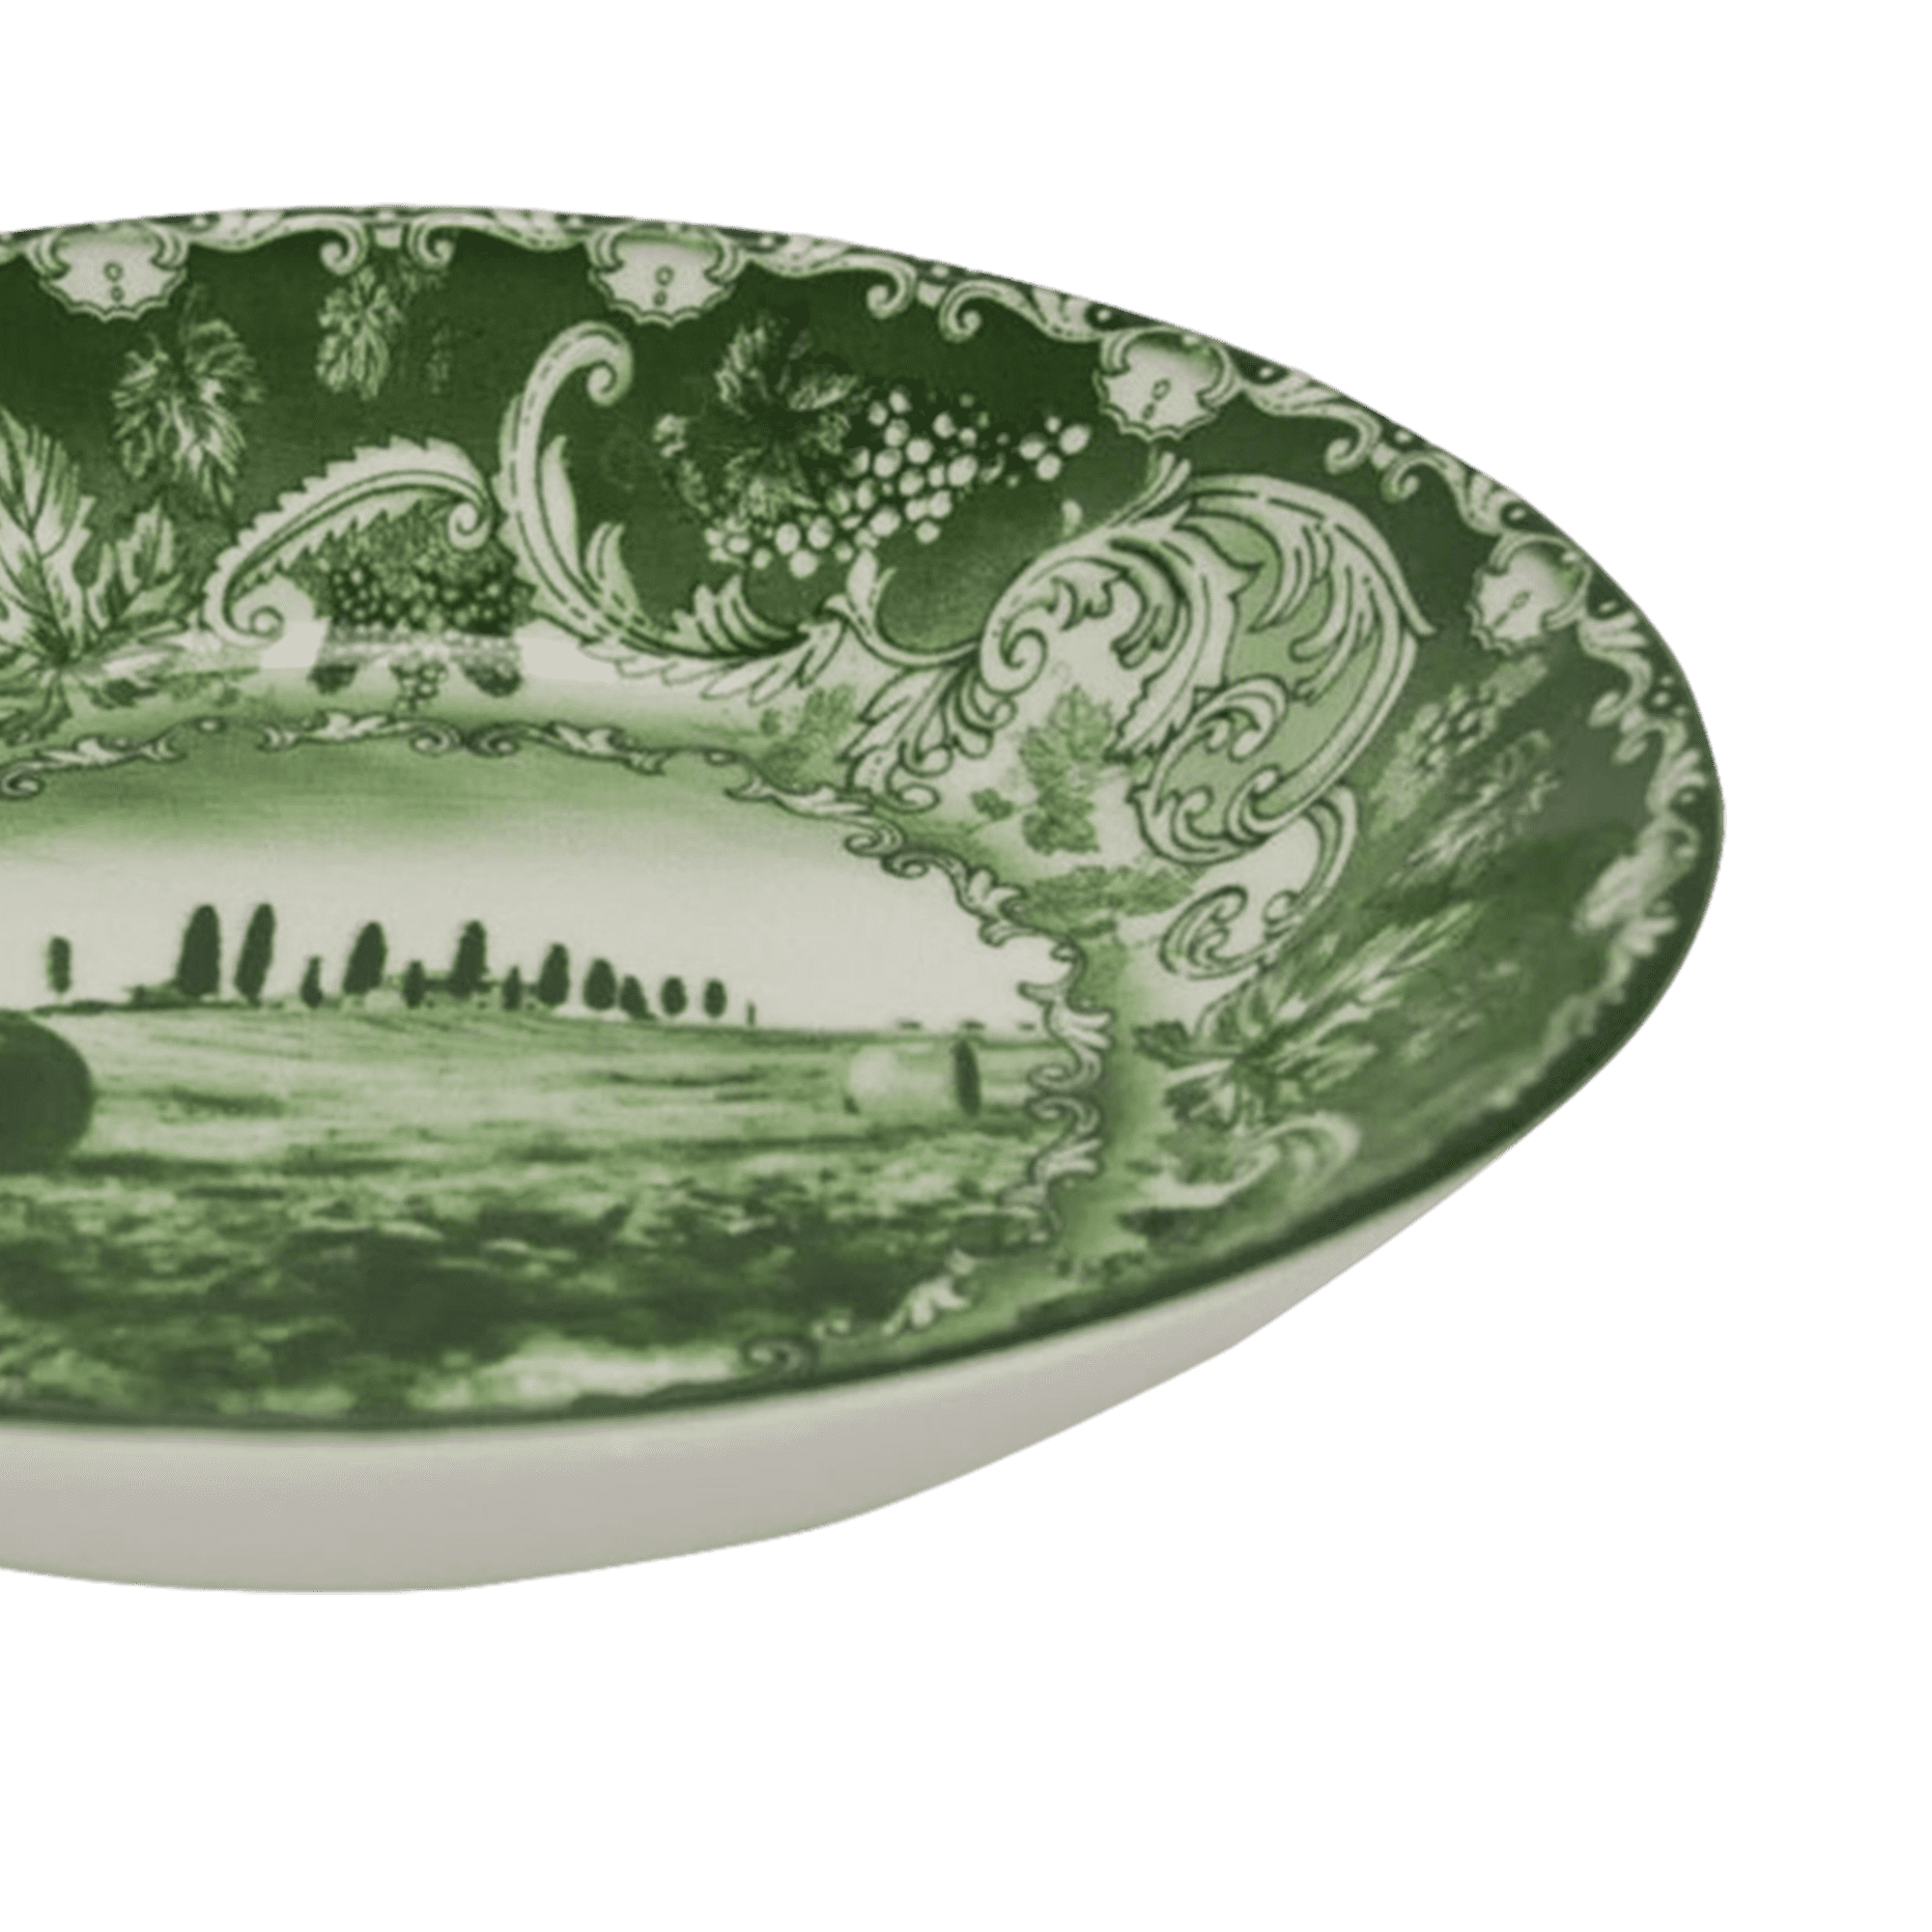 Bolgheri Verde Serving Bowl